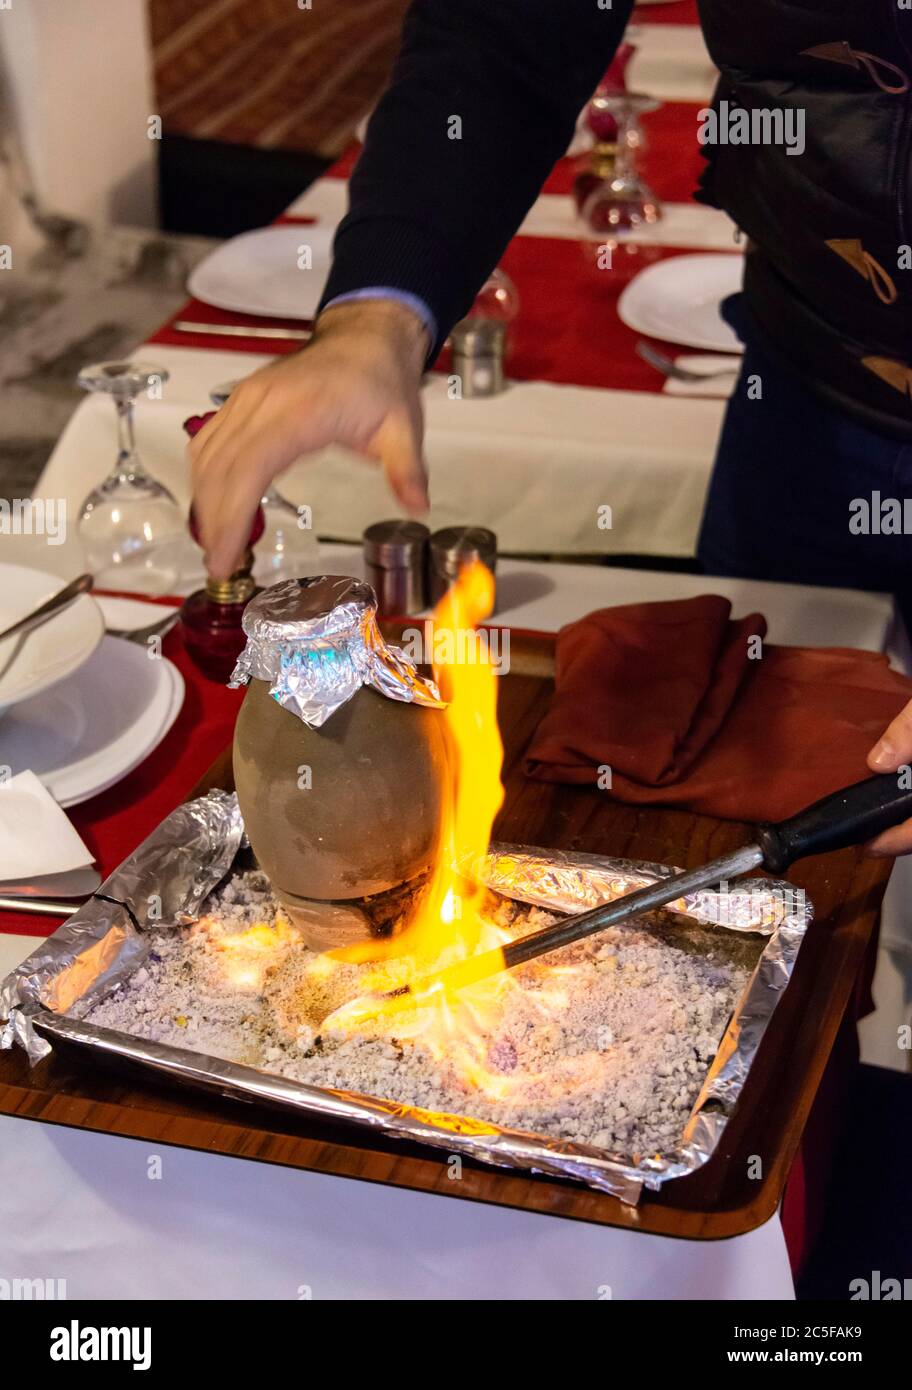 Der Kebab wird mit Feuer in einem Restaurant serviert, der Kebab wird in einem Steinguttopf geschmort, typisch türkisches Gericht aus Kappadokien, Istanbul, Türkei Stockfoto